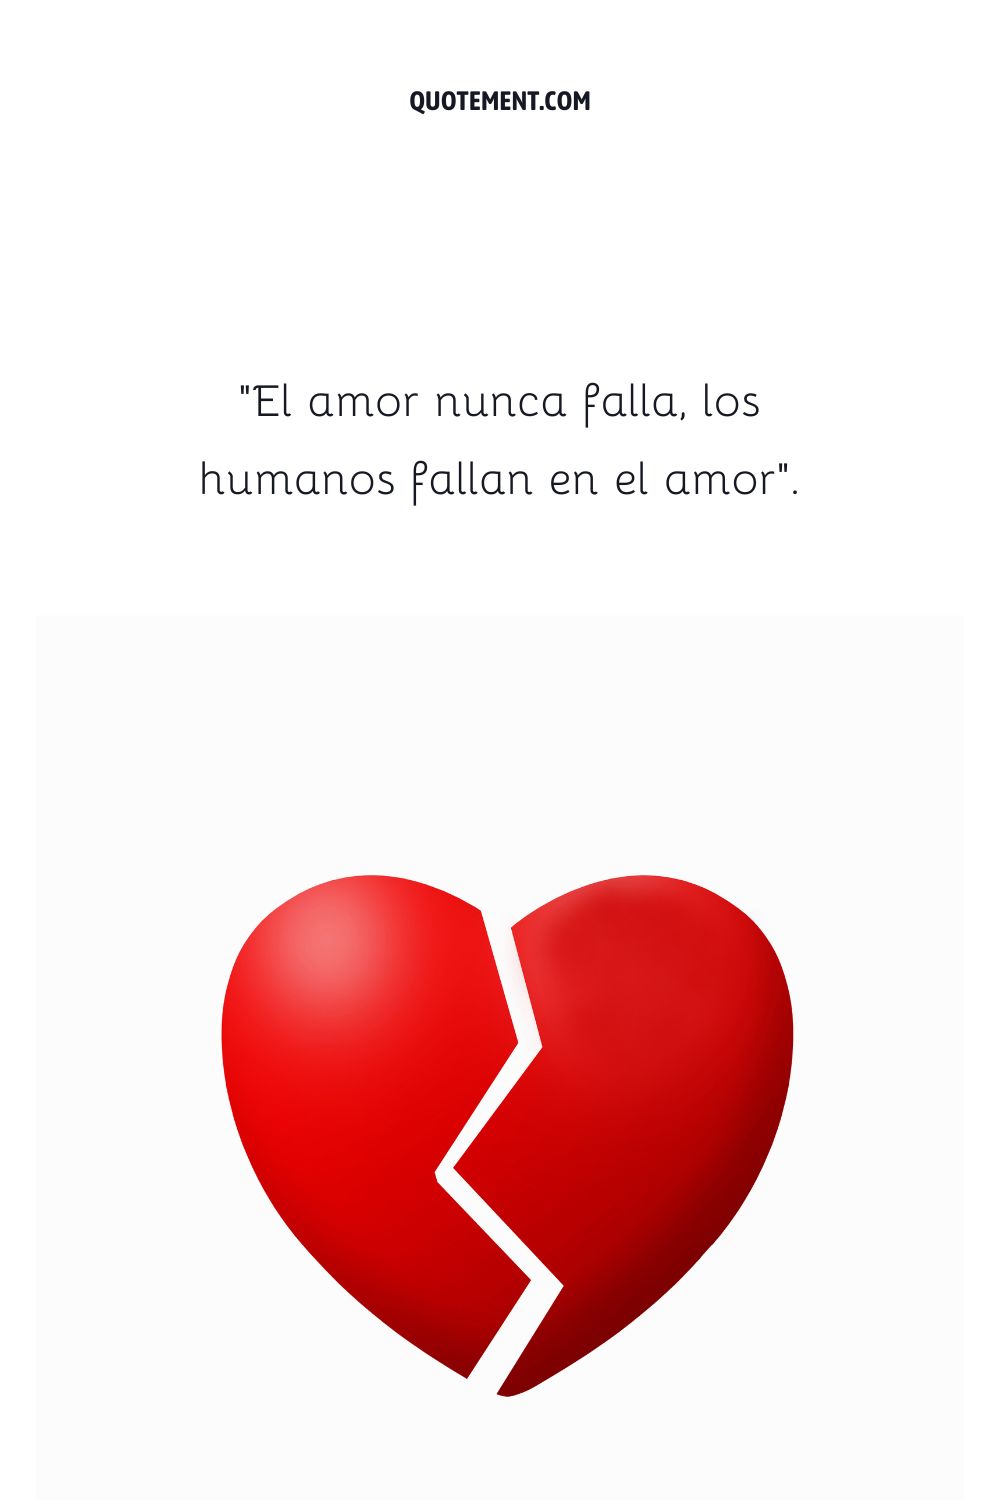 El amor nunca falla, los humanos fallan en el amor.